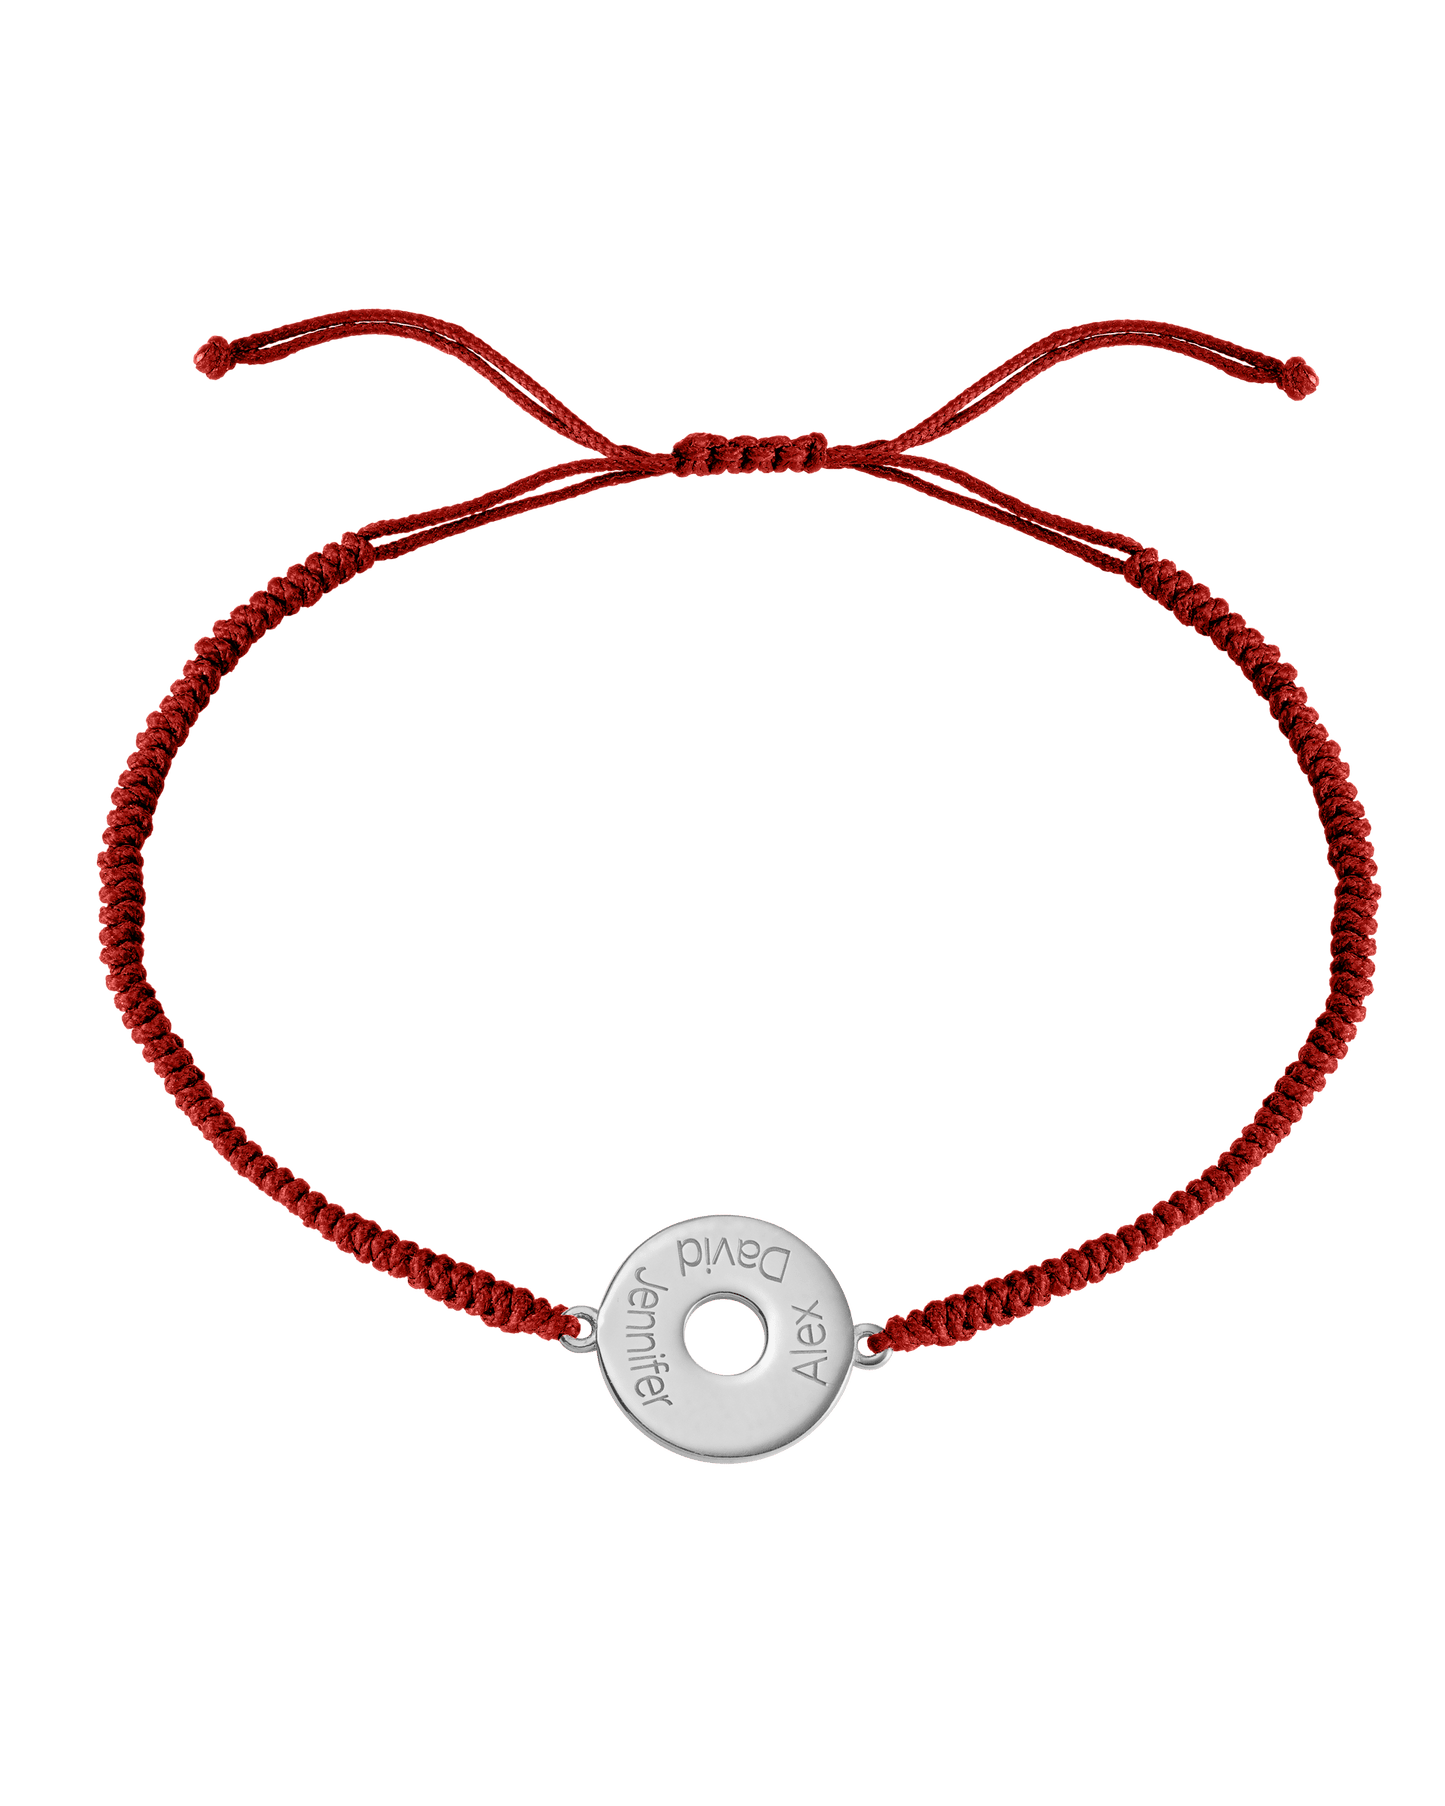 Donut Cord Bracelet - 925 Sterling Silver Bracelets magal-dev Red 1 Names Adjustable from 4" to 9"